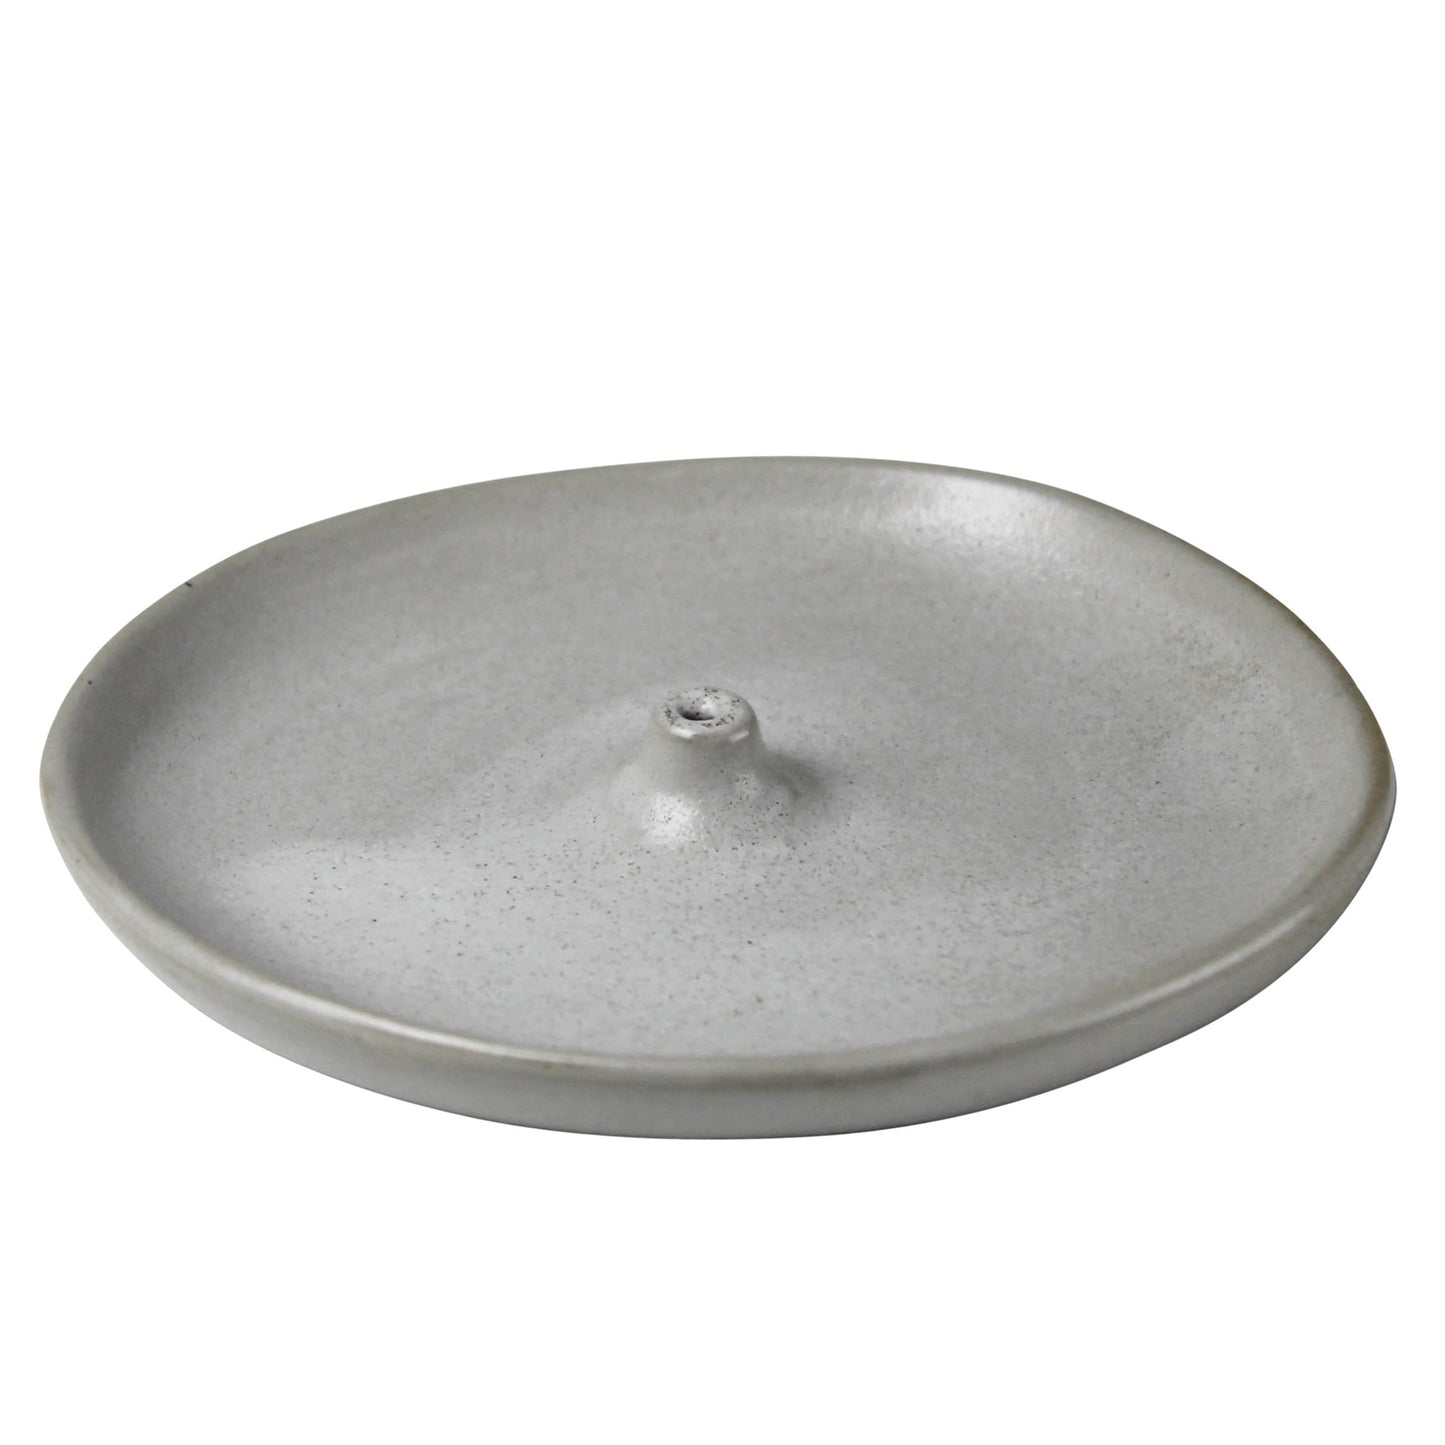 Round ceramic incense holder